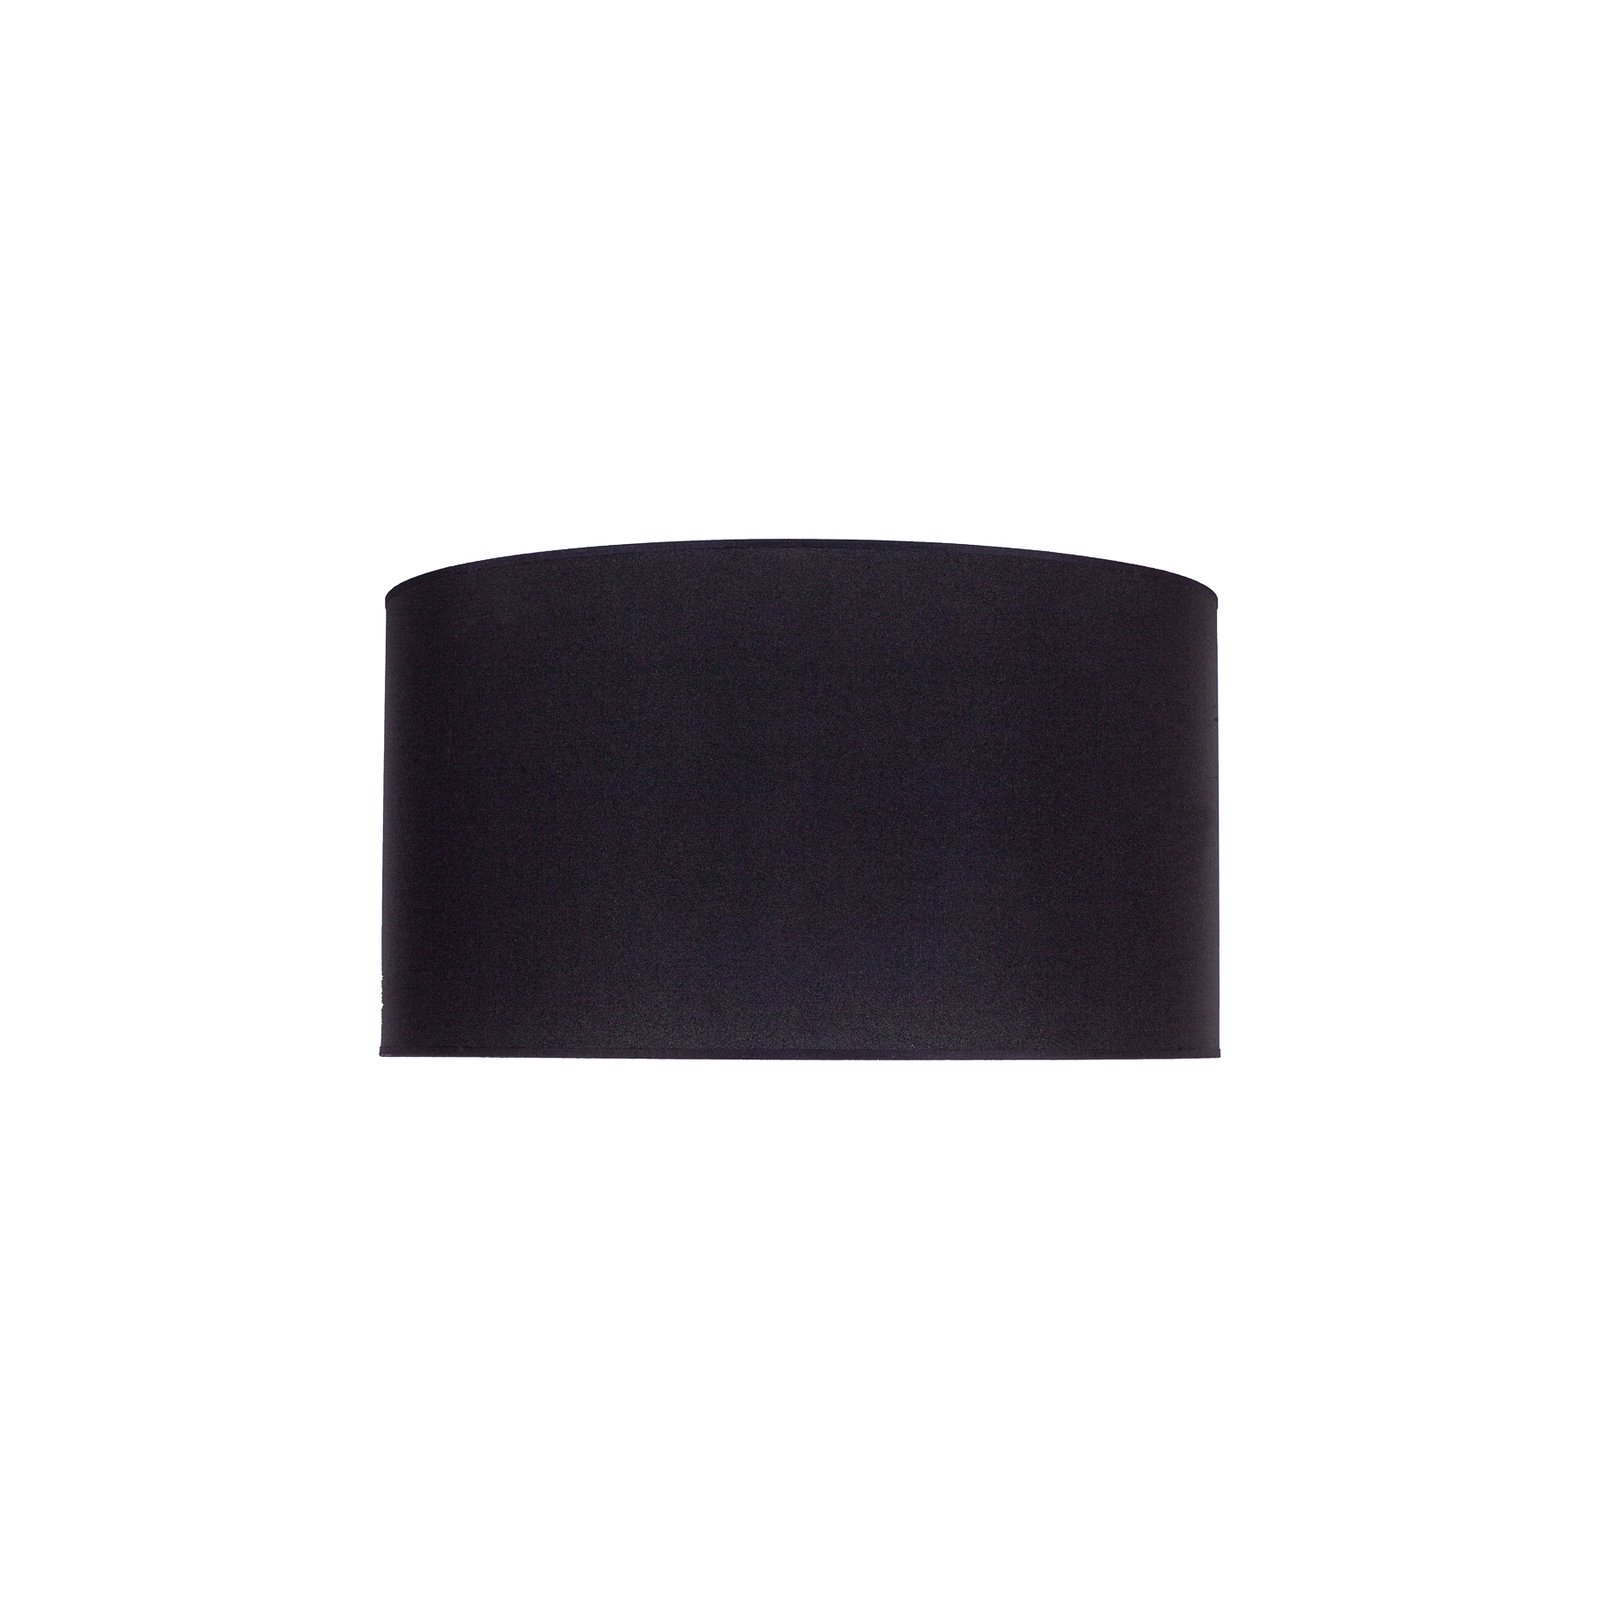 Kap Roller Ø 40 cm, zwart